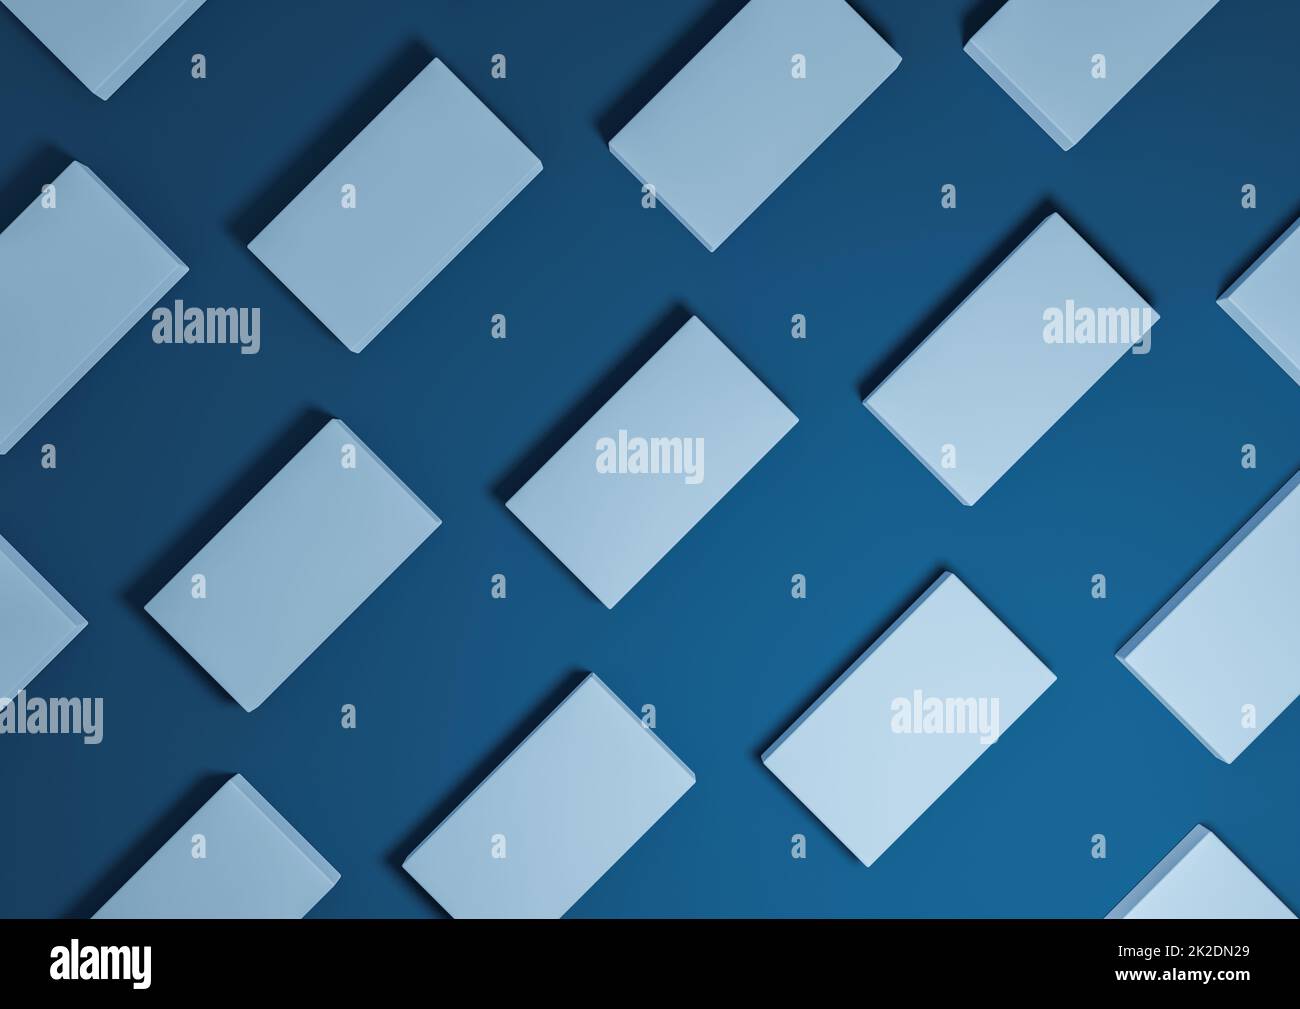 Scuro, blu acqua, 3D rendono minimal, semplice, moderno, vista dall'alto schermo piatto del prodotto da sopra lo sfondo con i supporti quadrati ripetitivi in un motivo Foto Stock